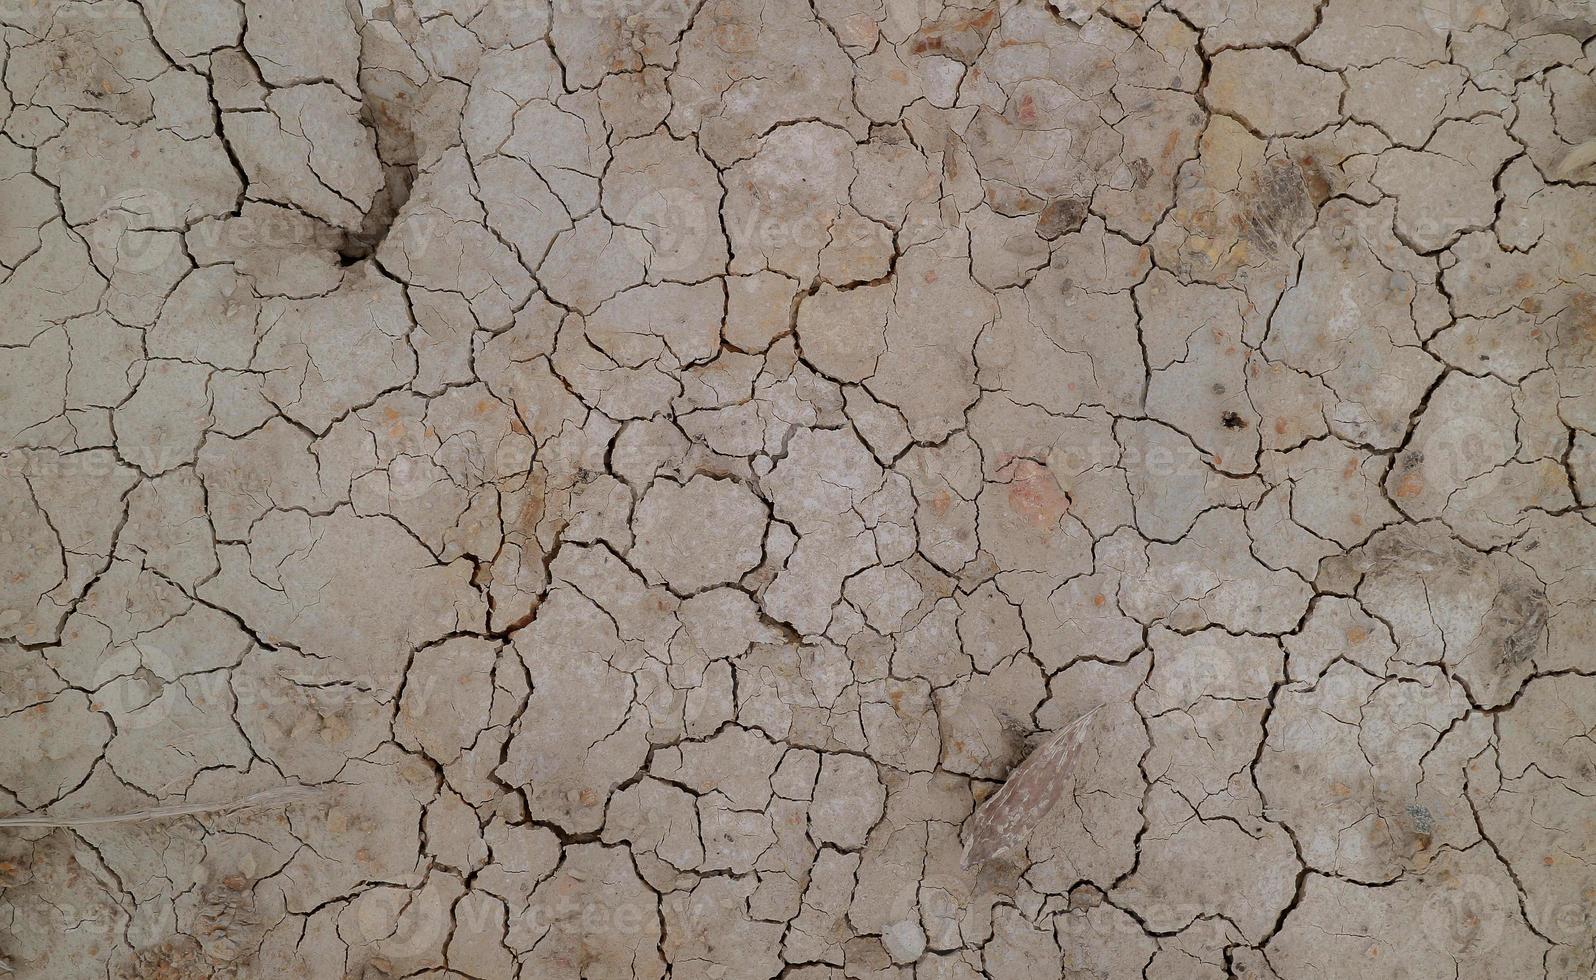 grond gebarsten door droogte. droge seizoen zorgt ervoor dat de grond uitdroogt en barst foto